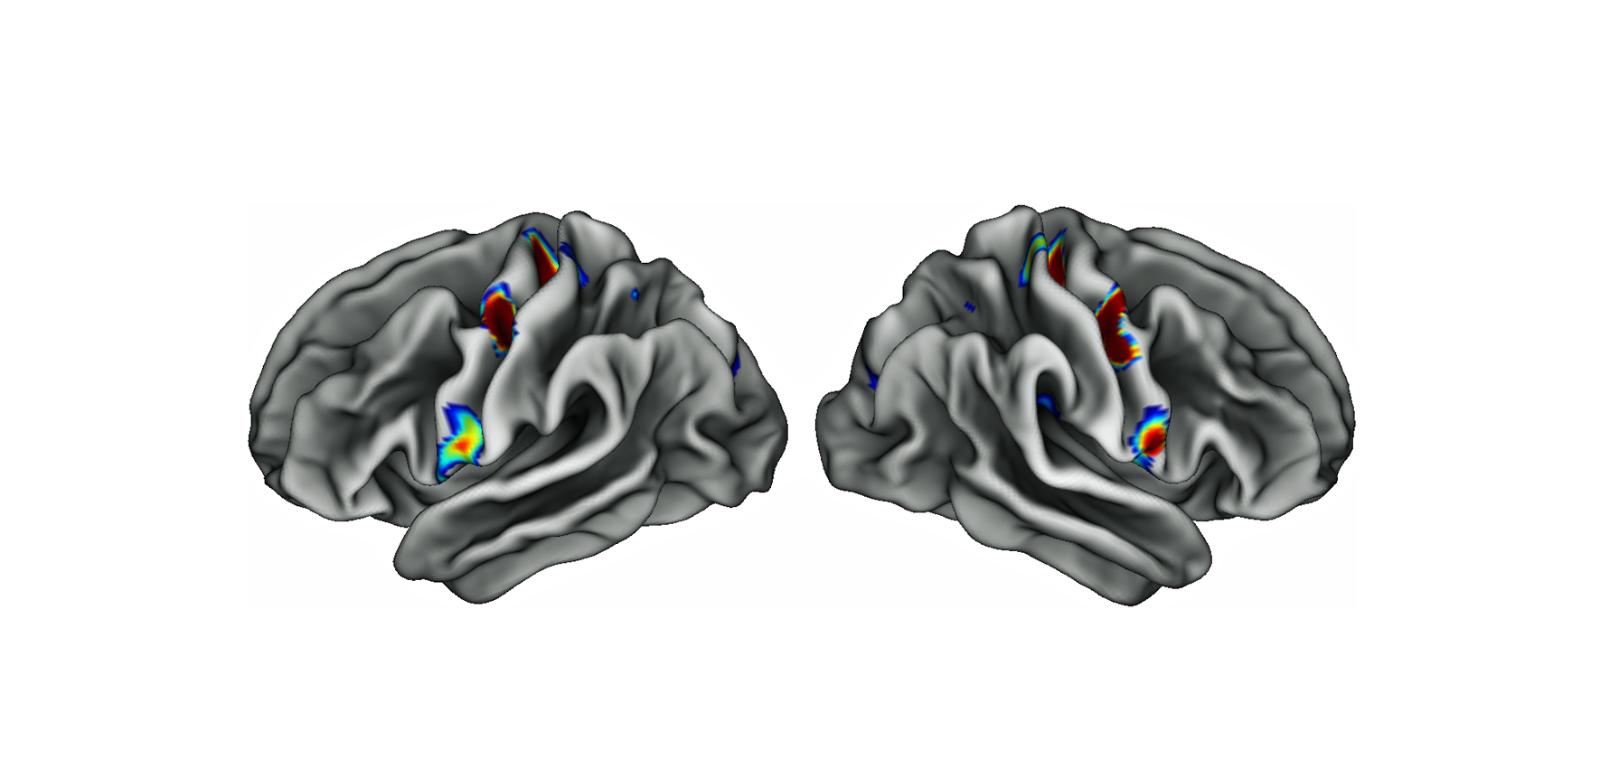 Trzy kolorowe plamy na każdej połowie mózgu to specjalne obszary w korze ruchowej, które są połączone z rejonami odpowiedzialnymi za myślenie, planowanie i kontrolę podstawowych funkcji organizmu, takich jak bicie serca. Im intensywniejszy kolor, tym gęstsze połączenia.